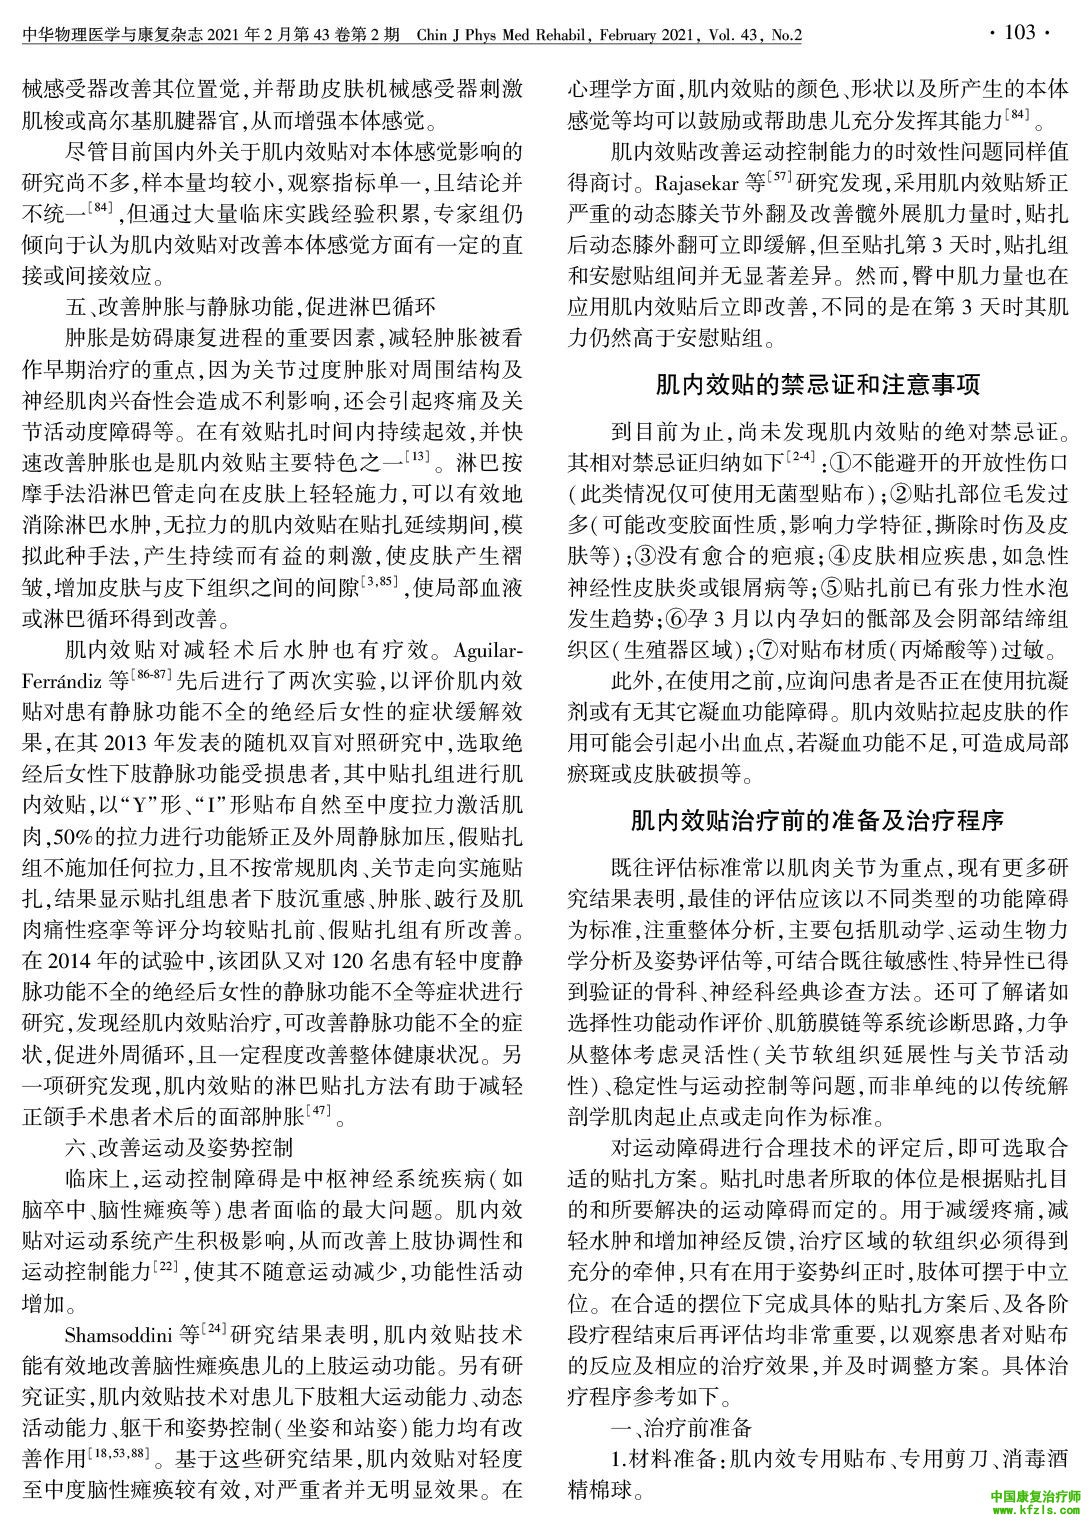 中国肌内效贴技术临床应用专家共识（2020版）